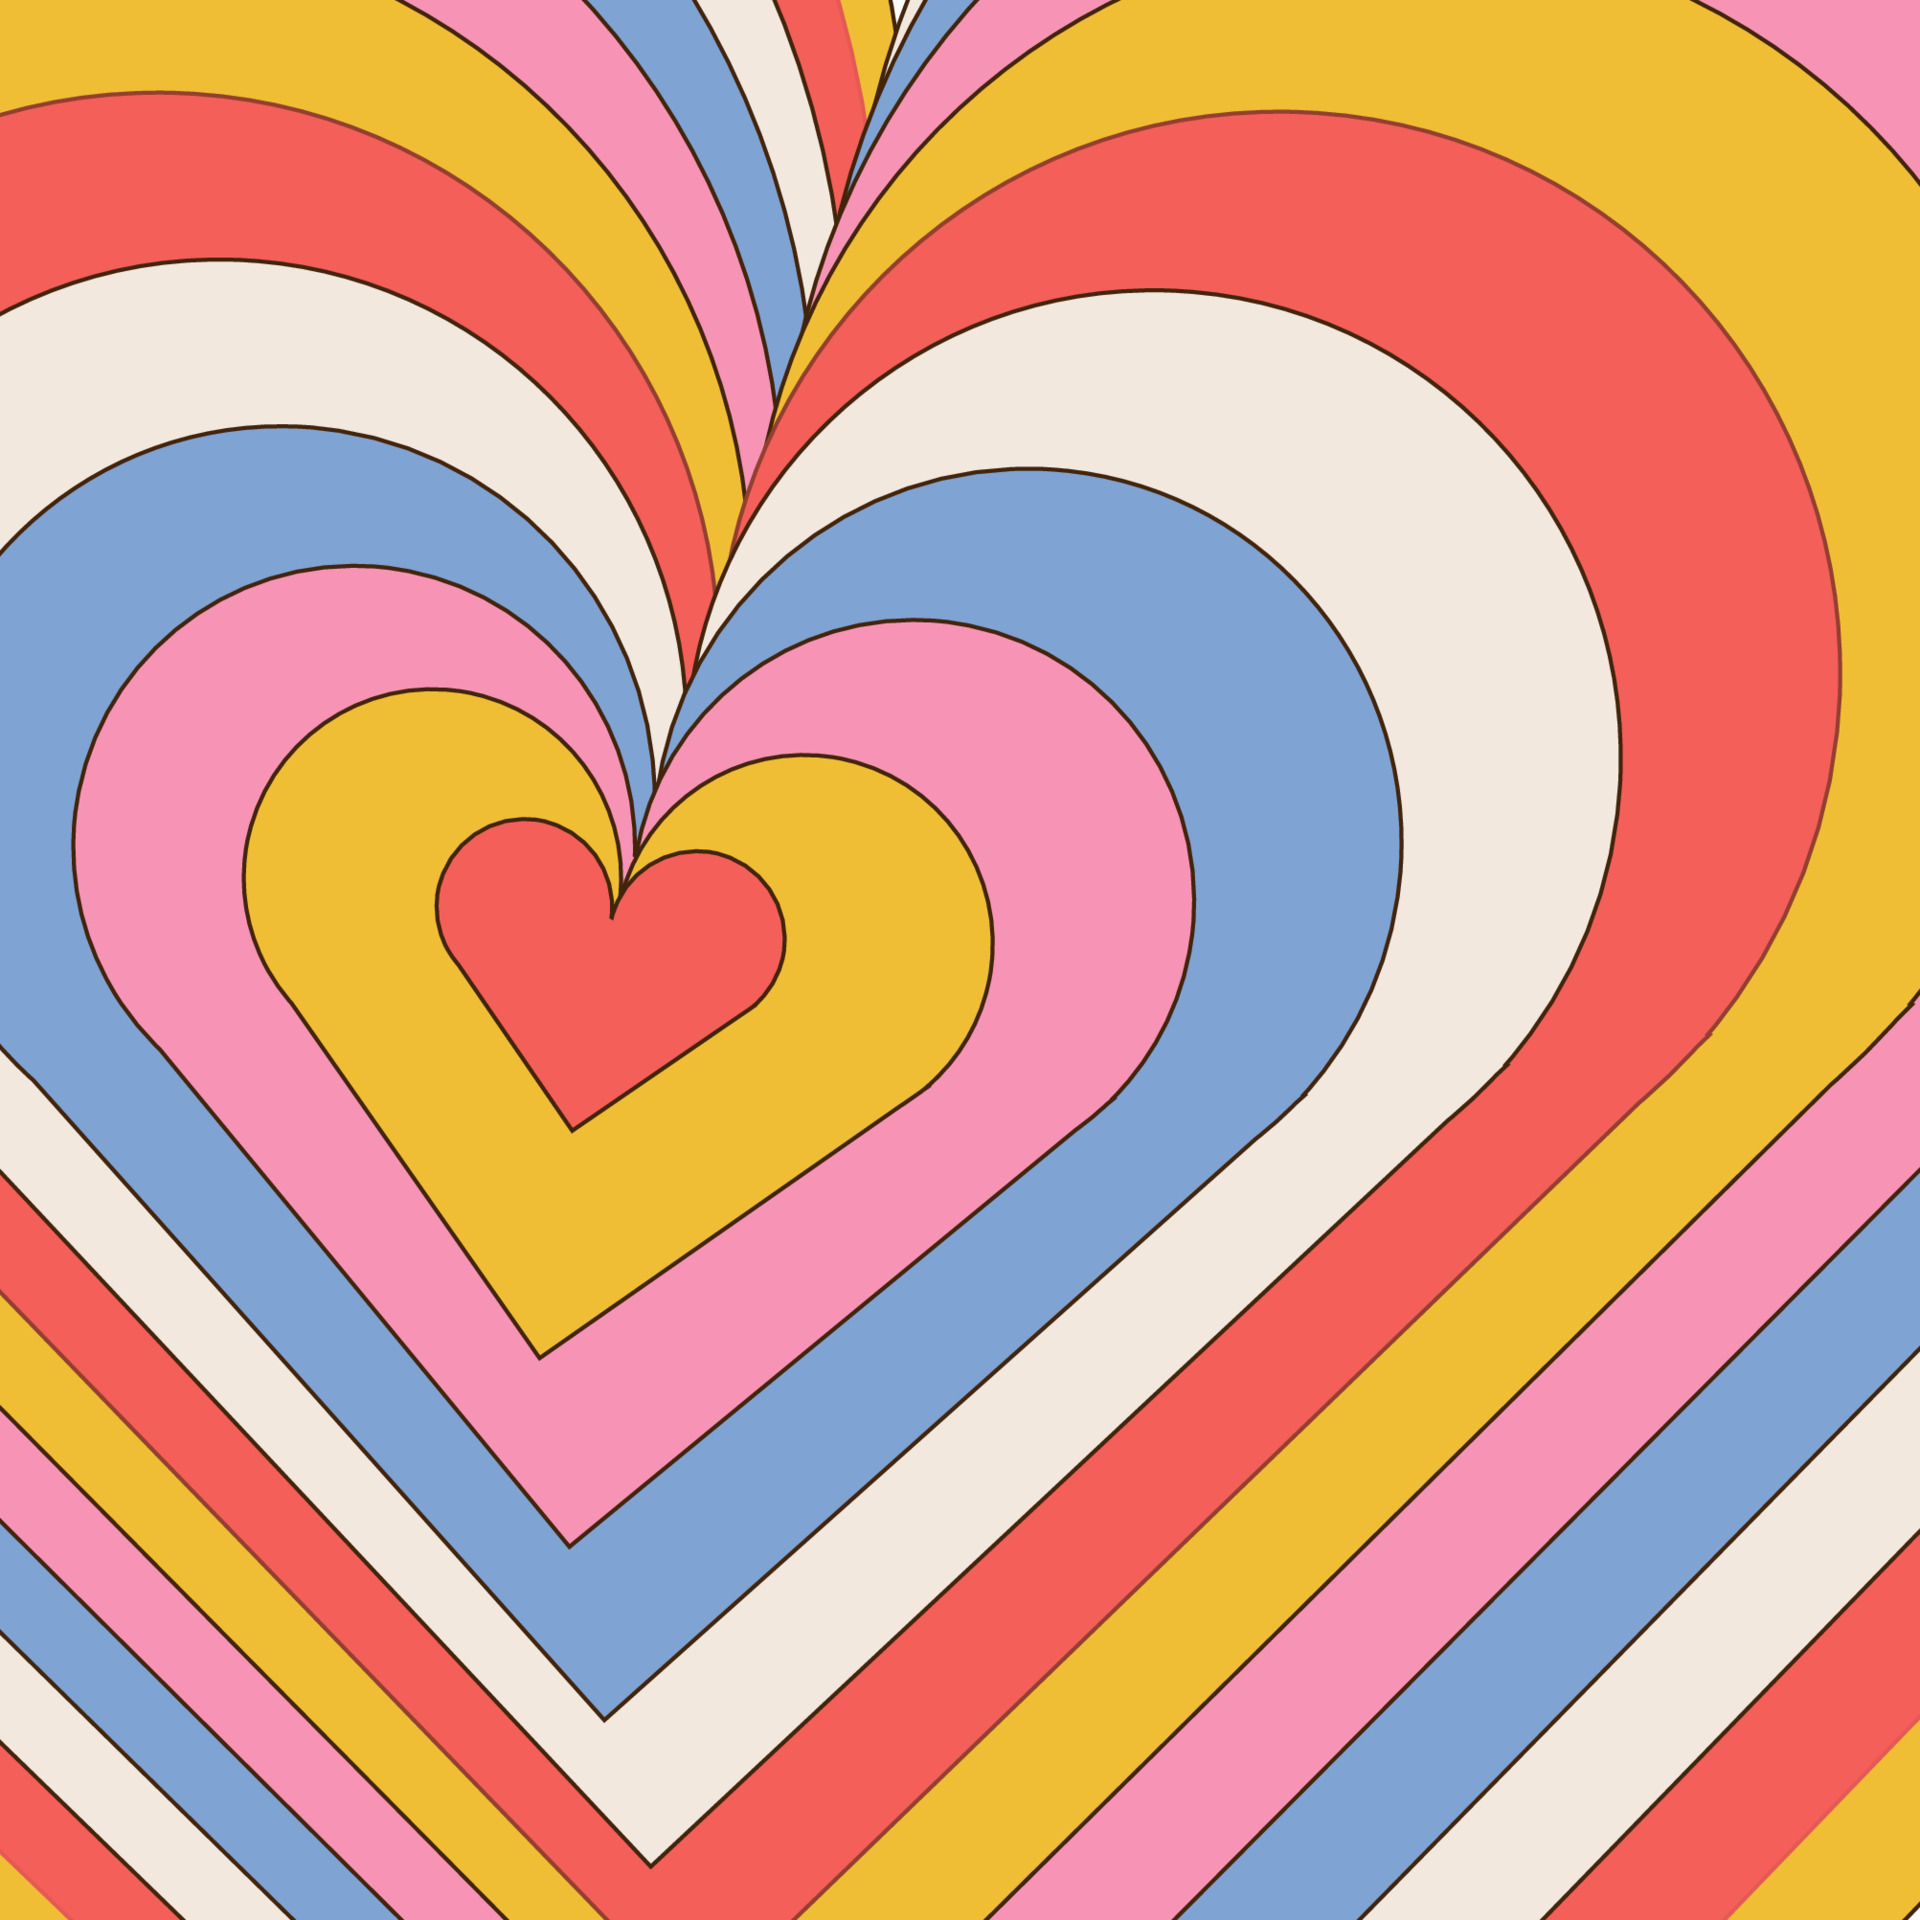 Hoa văn trái tim retro thập niên 70 sẽ khiến bạn bị thu hút ngay từ cái nhìn đầu tiên. Hãy để nét đẹp đơn giản mà tinh tế của nó làm cho trái tim của bạn rộn ràng với cảm xúc và hứng khởi.